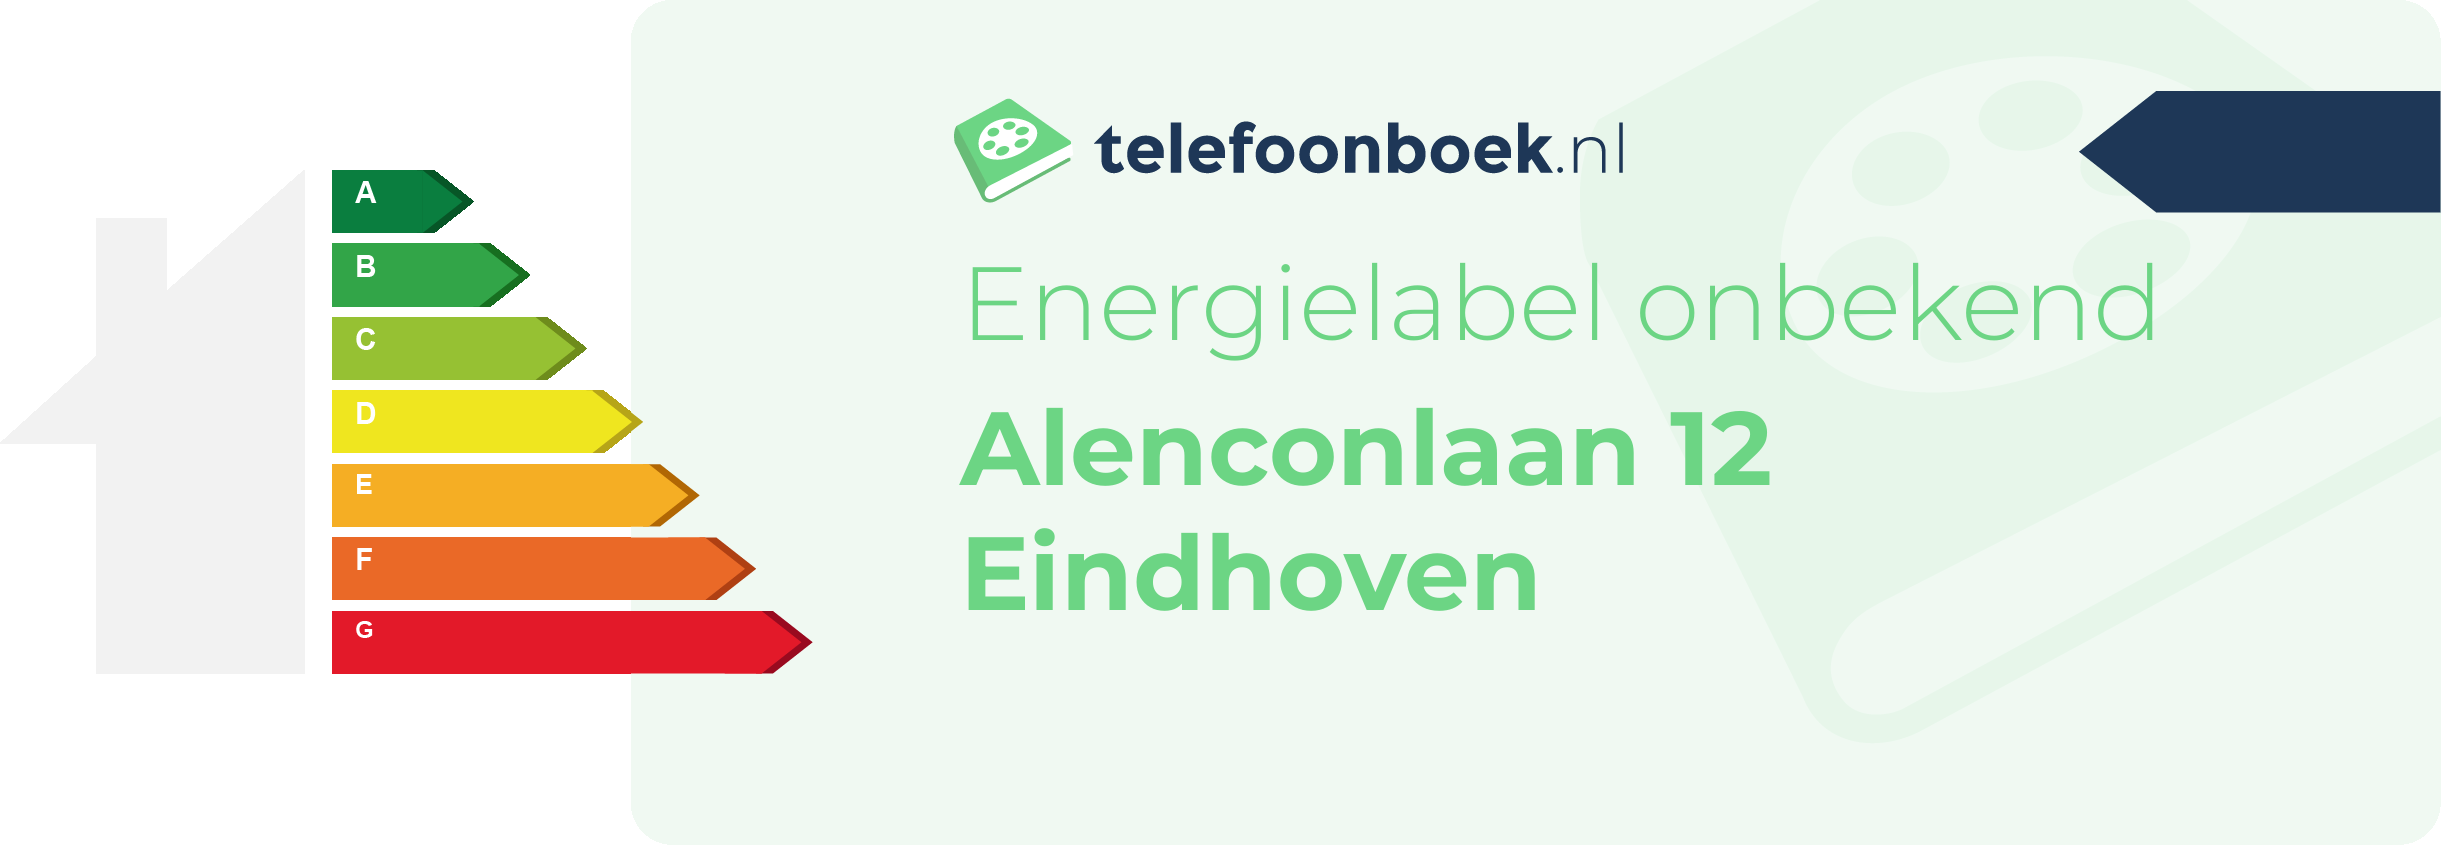 Energielabel Alenconlaan 12 Eindhoven